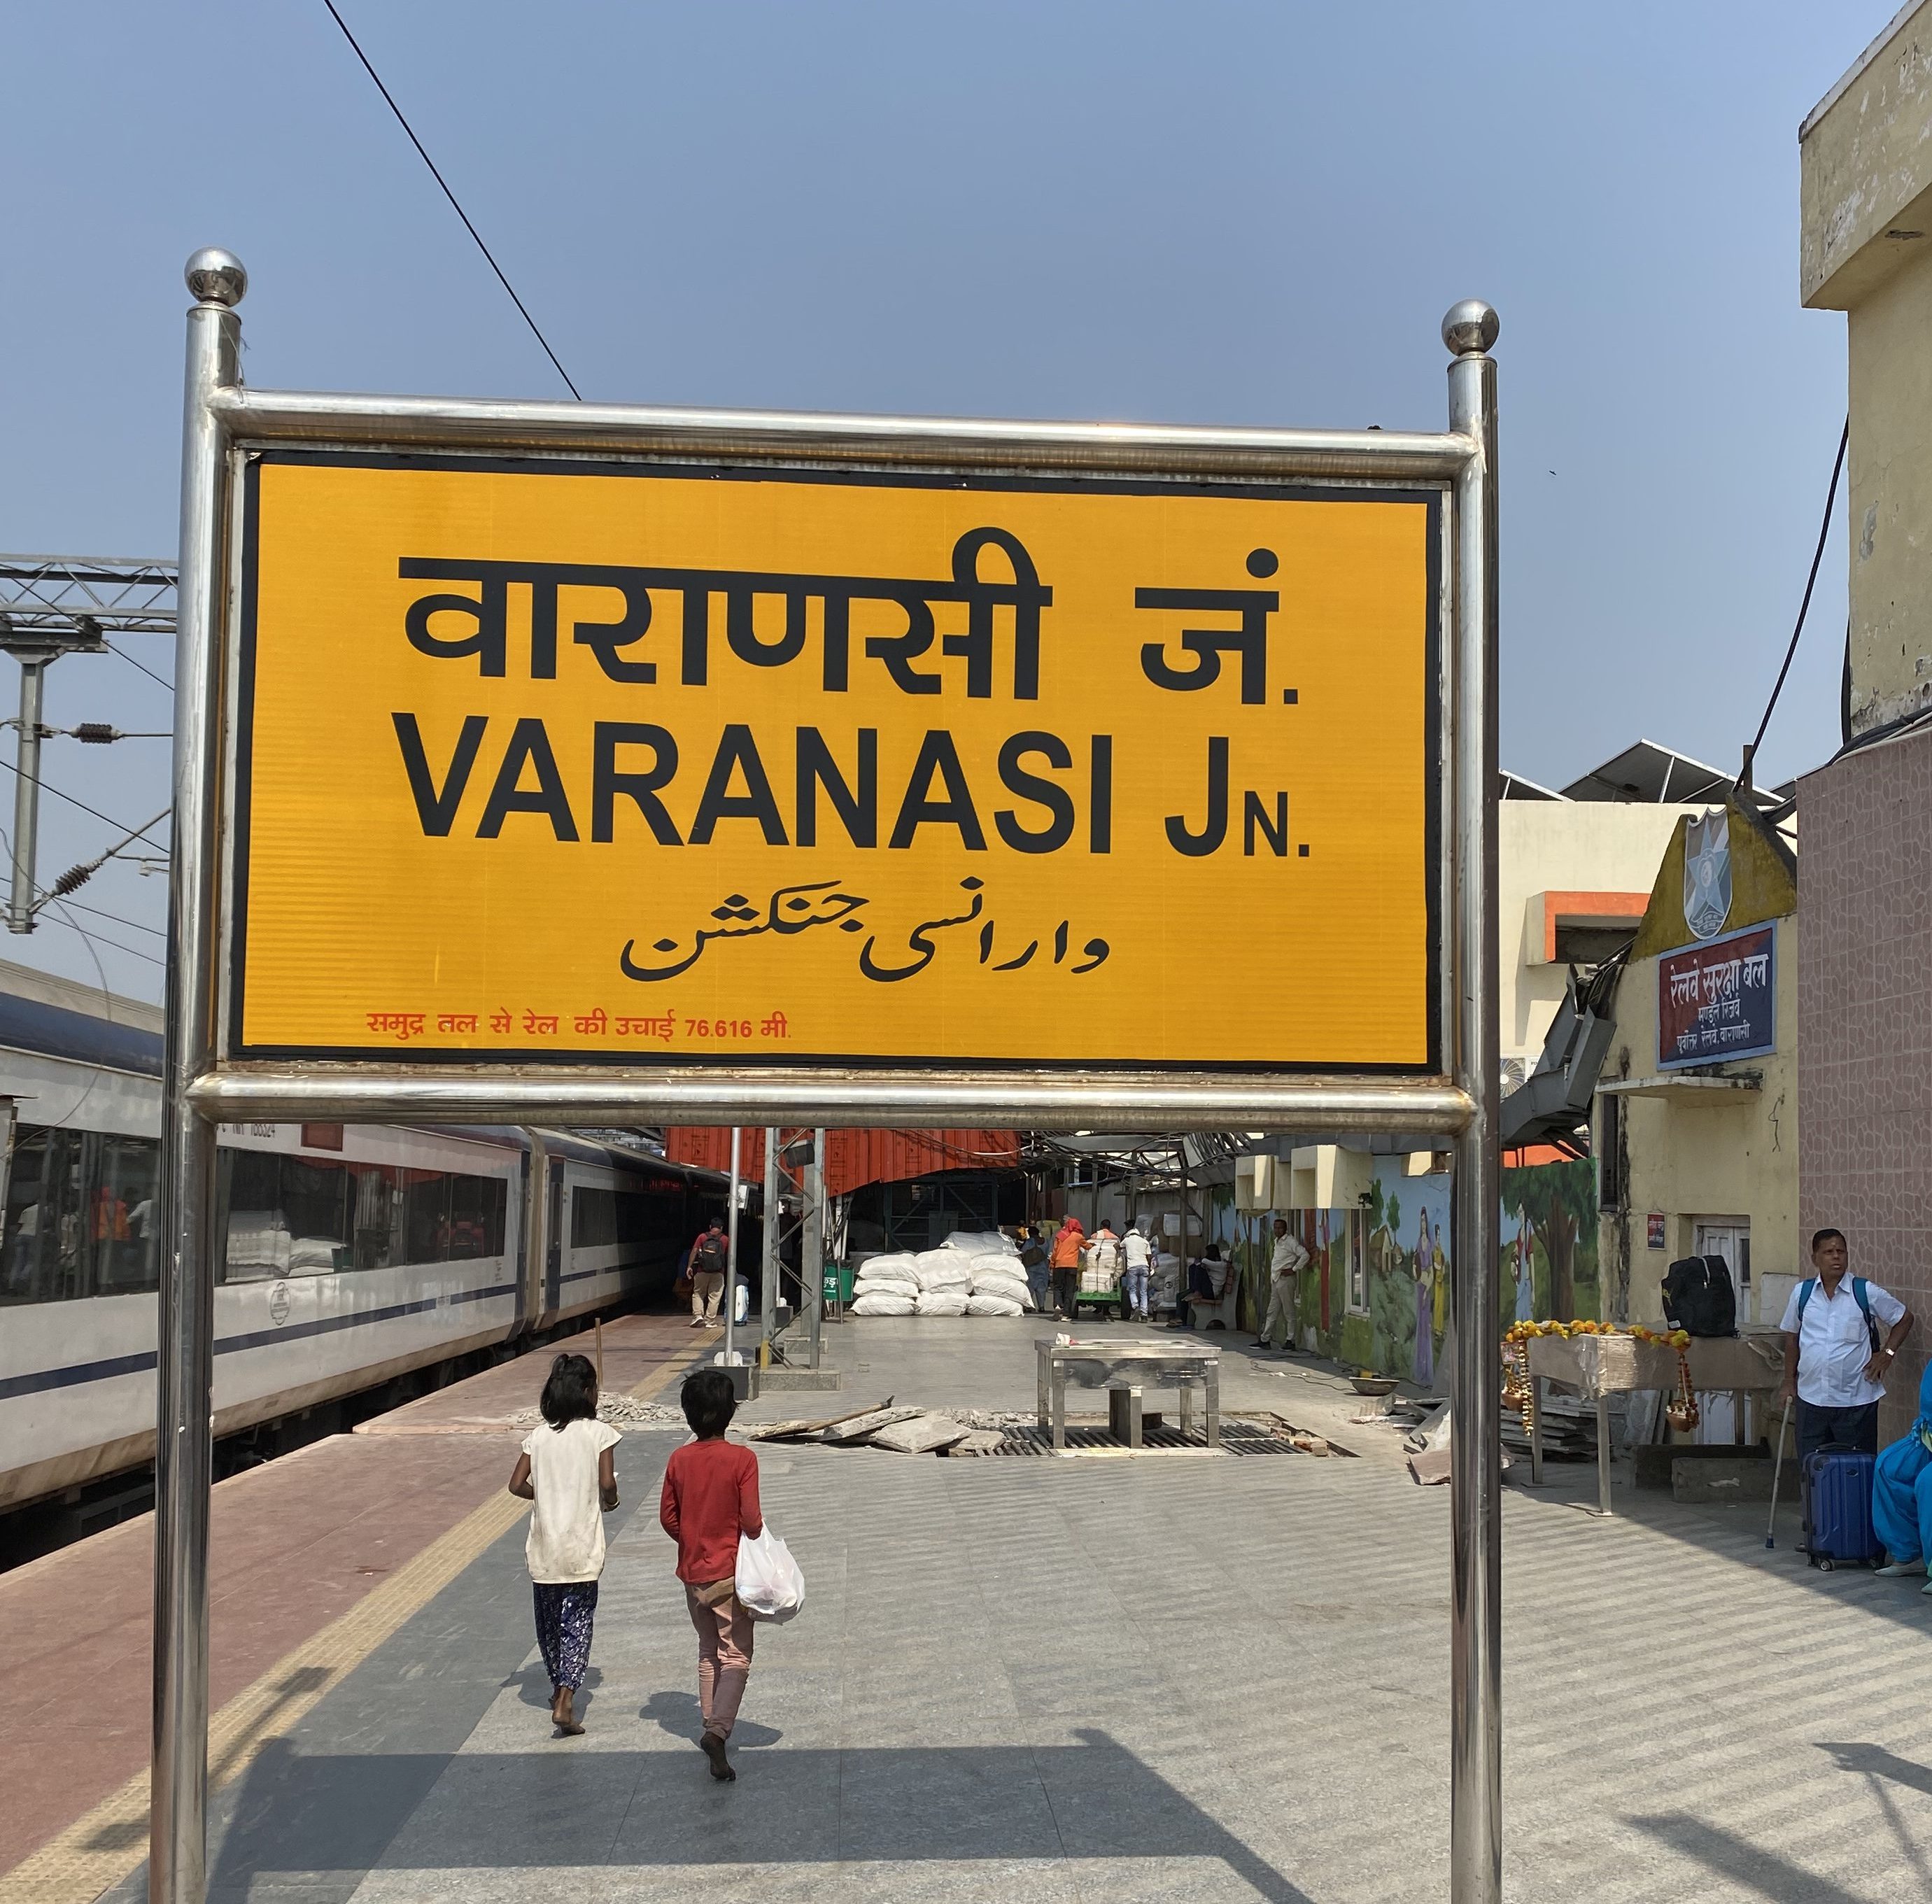 Varanasi Junction